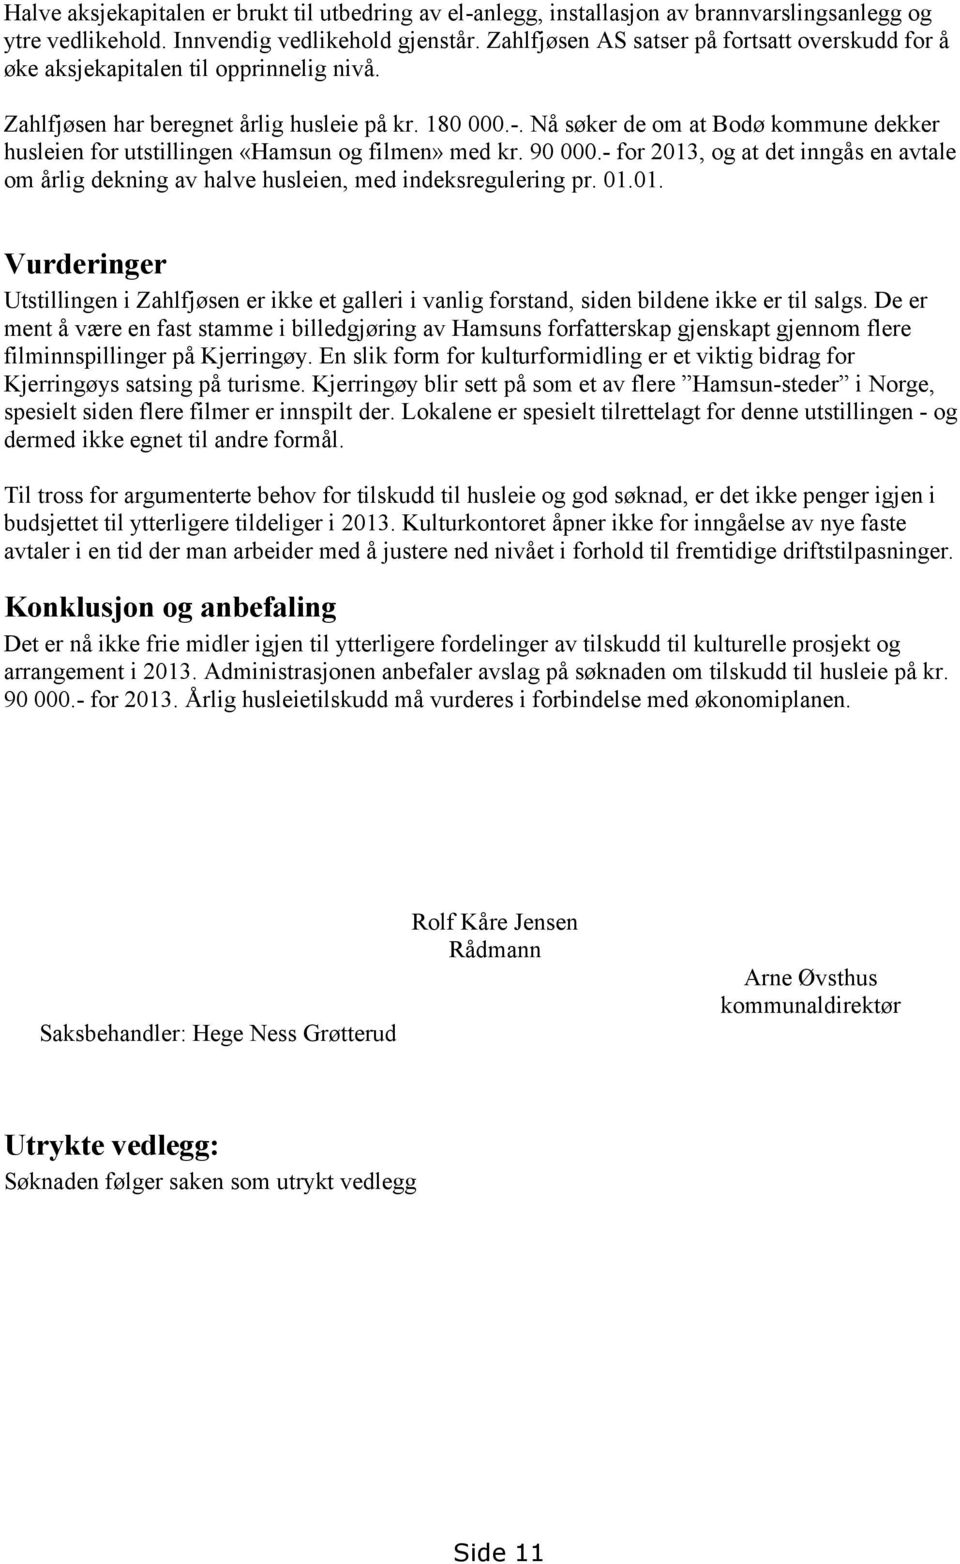 Nå søker de om at Bodø kommune dekker husleien for utstillingen «Hamsun og filmen» med kr. 90 000.- for 2013, og at det inngås en avtale om årlig dekning av halve husleien, med indeksregulering pr.